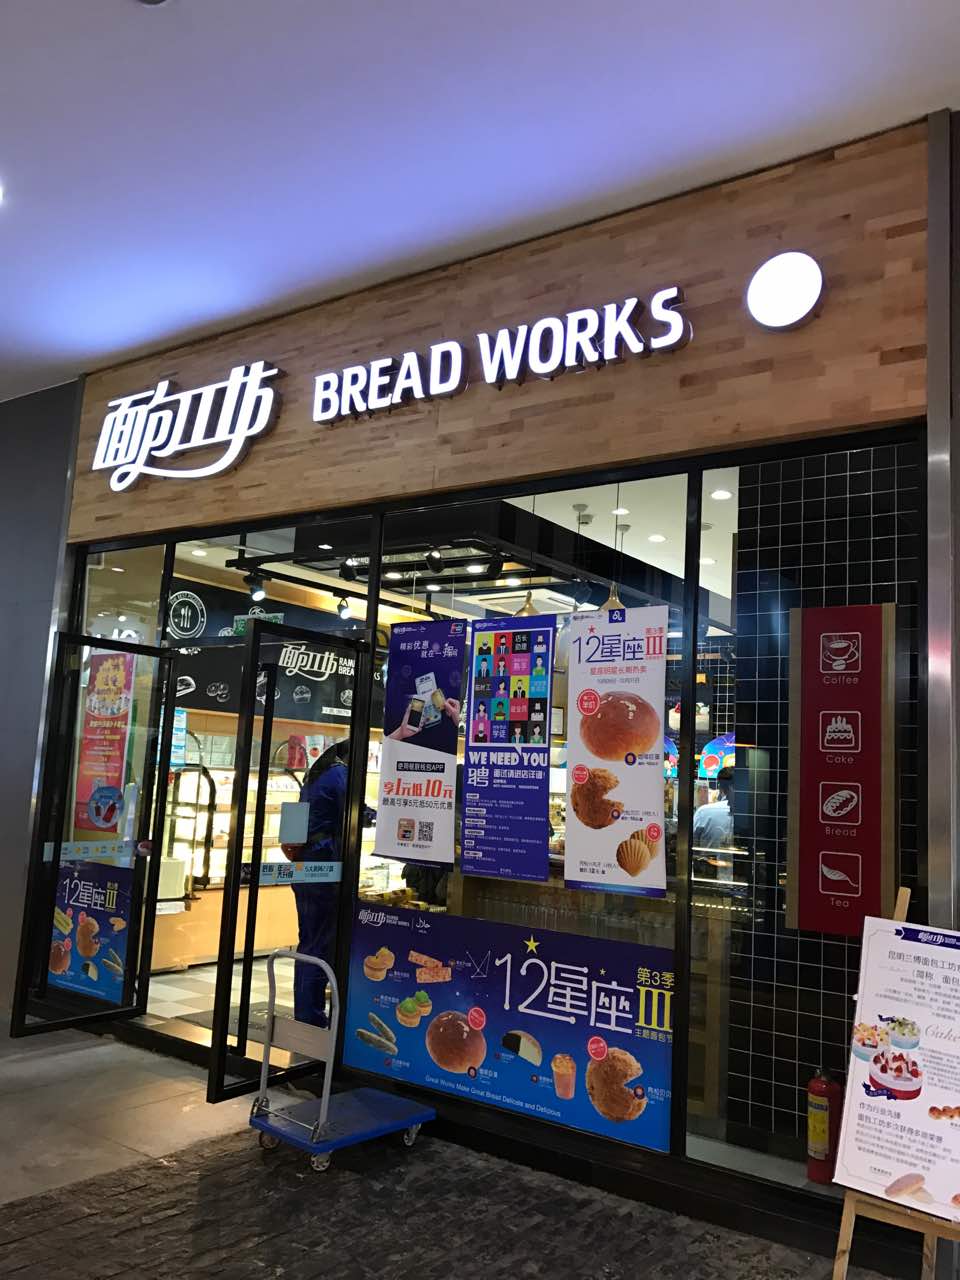 2022面包工坊(欣都龙城店)美食餐厅,就在欣都龙城负一层,店面清